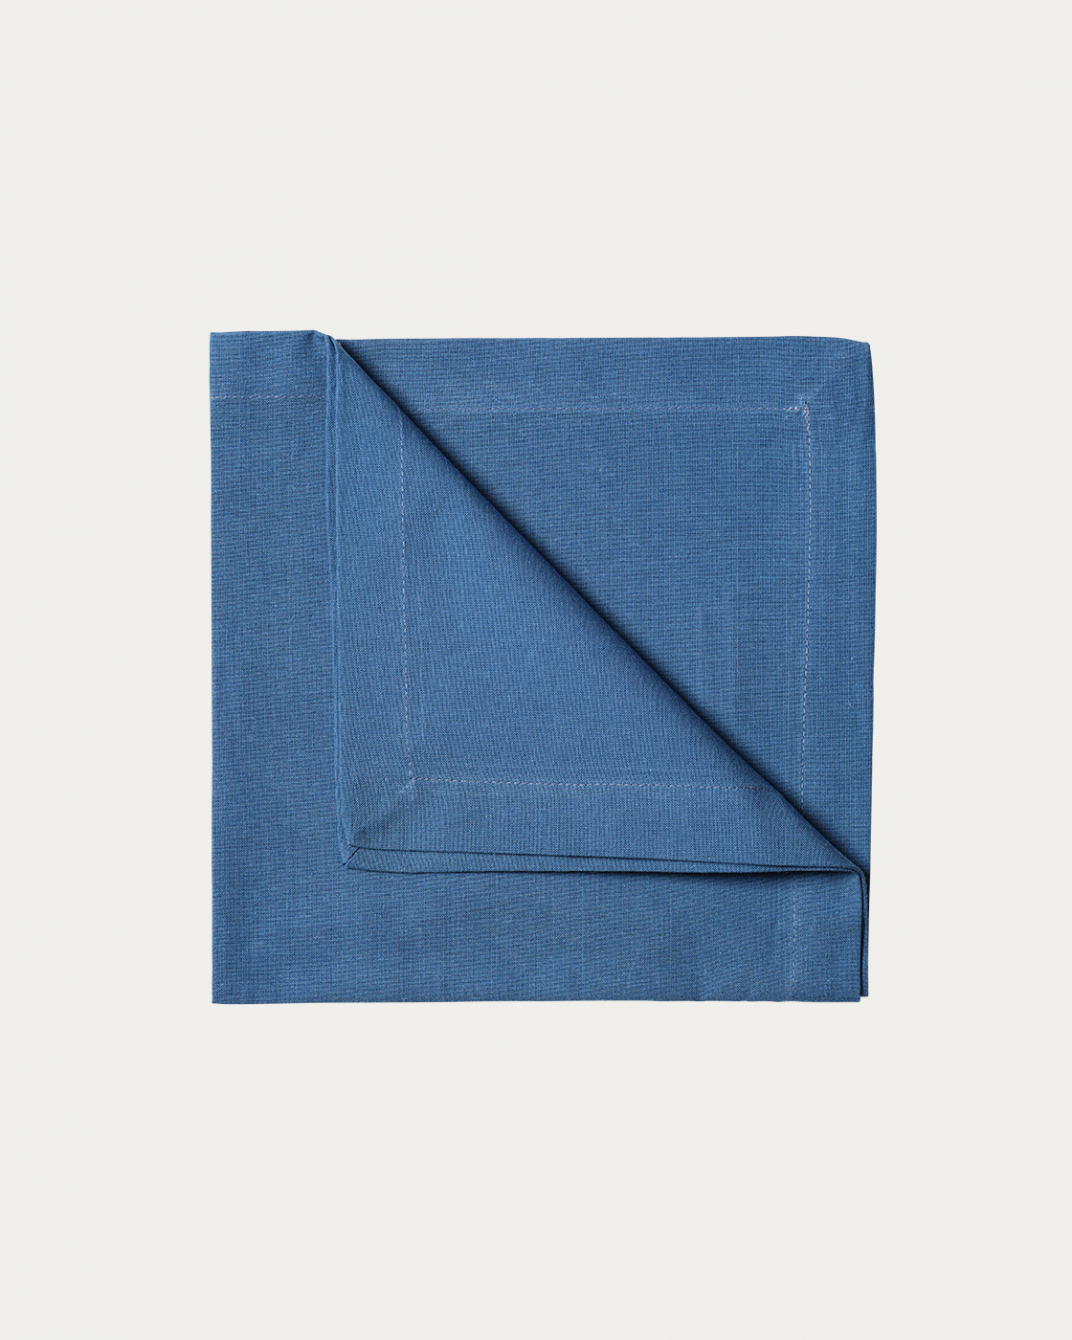 Produktbild djup havsblå ROBERT servett av mjuk bomull från LINUM DESIGN. Storlek 45x45 cm och säljs i 4 pack.